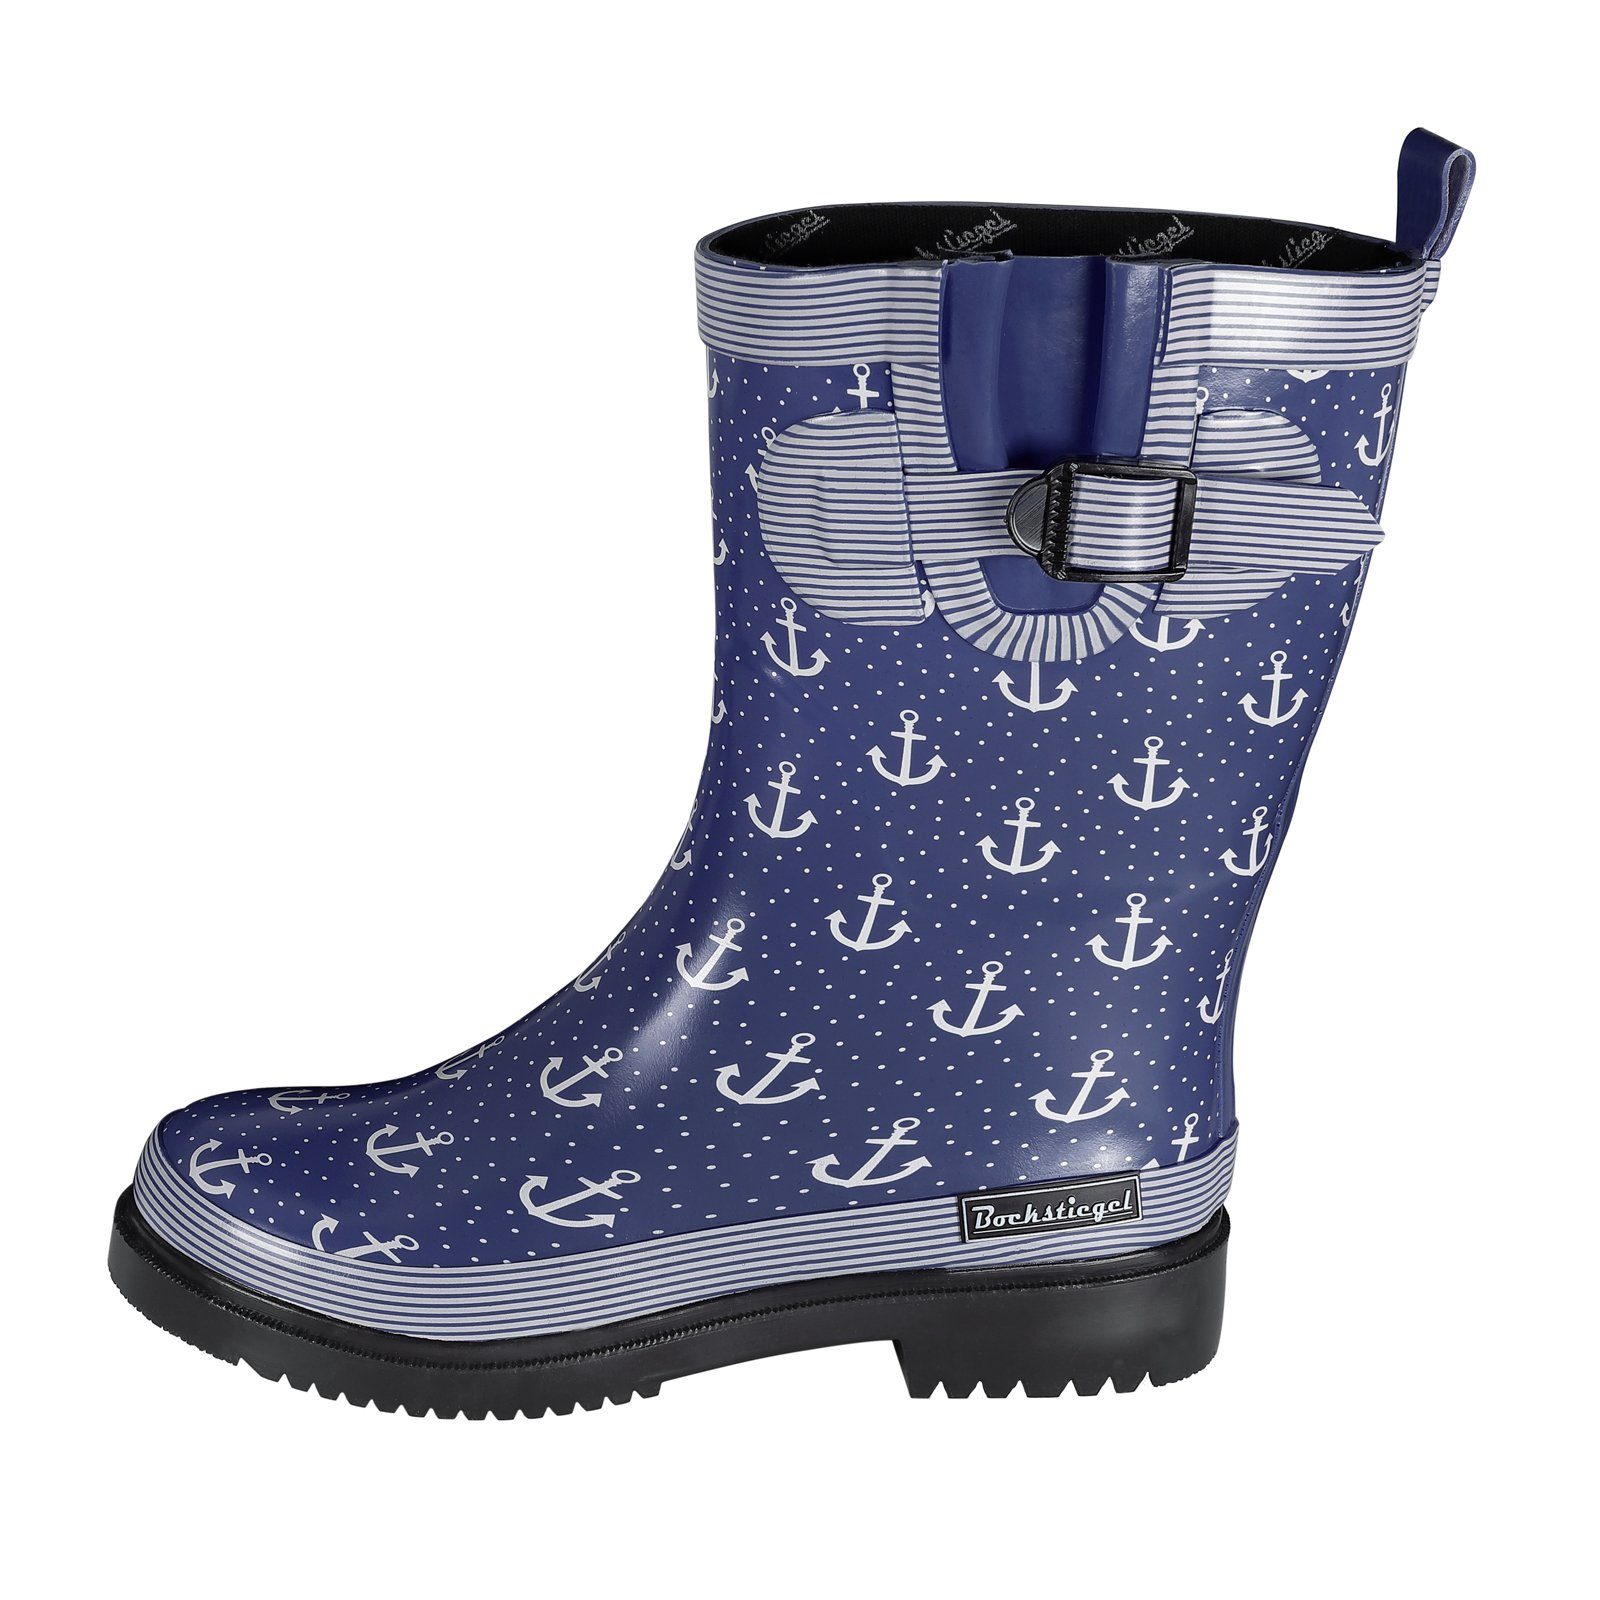 SALIHA Bockstiegel Stiefel Regenstiefel Marleen – Gummistiefel für Anker-Print blau Frauen mit Damen